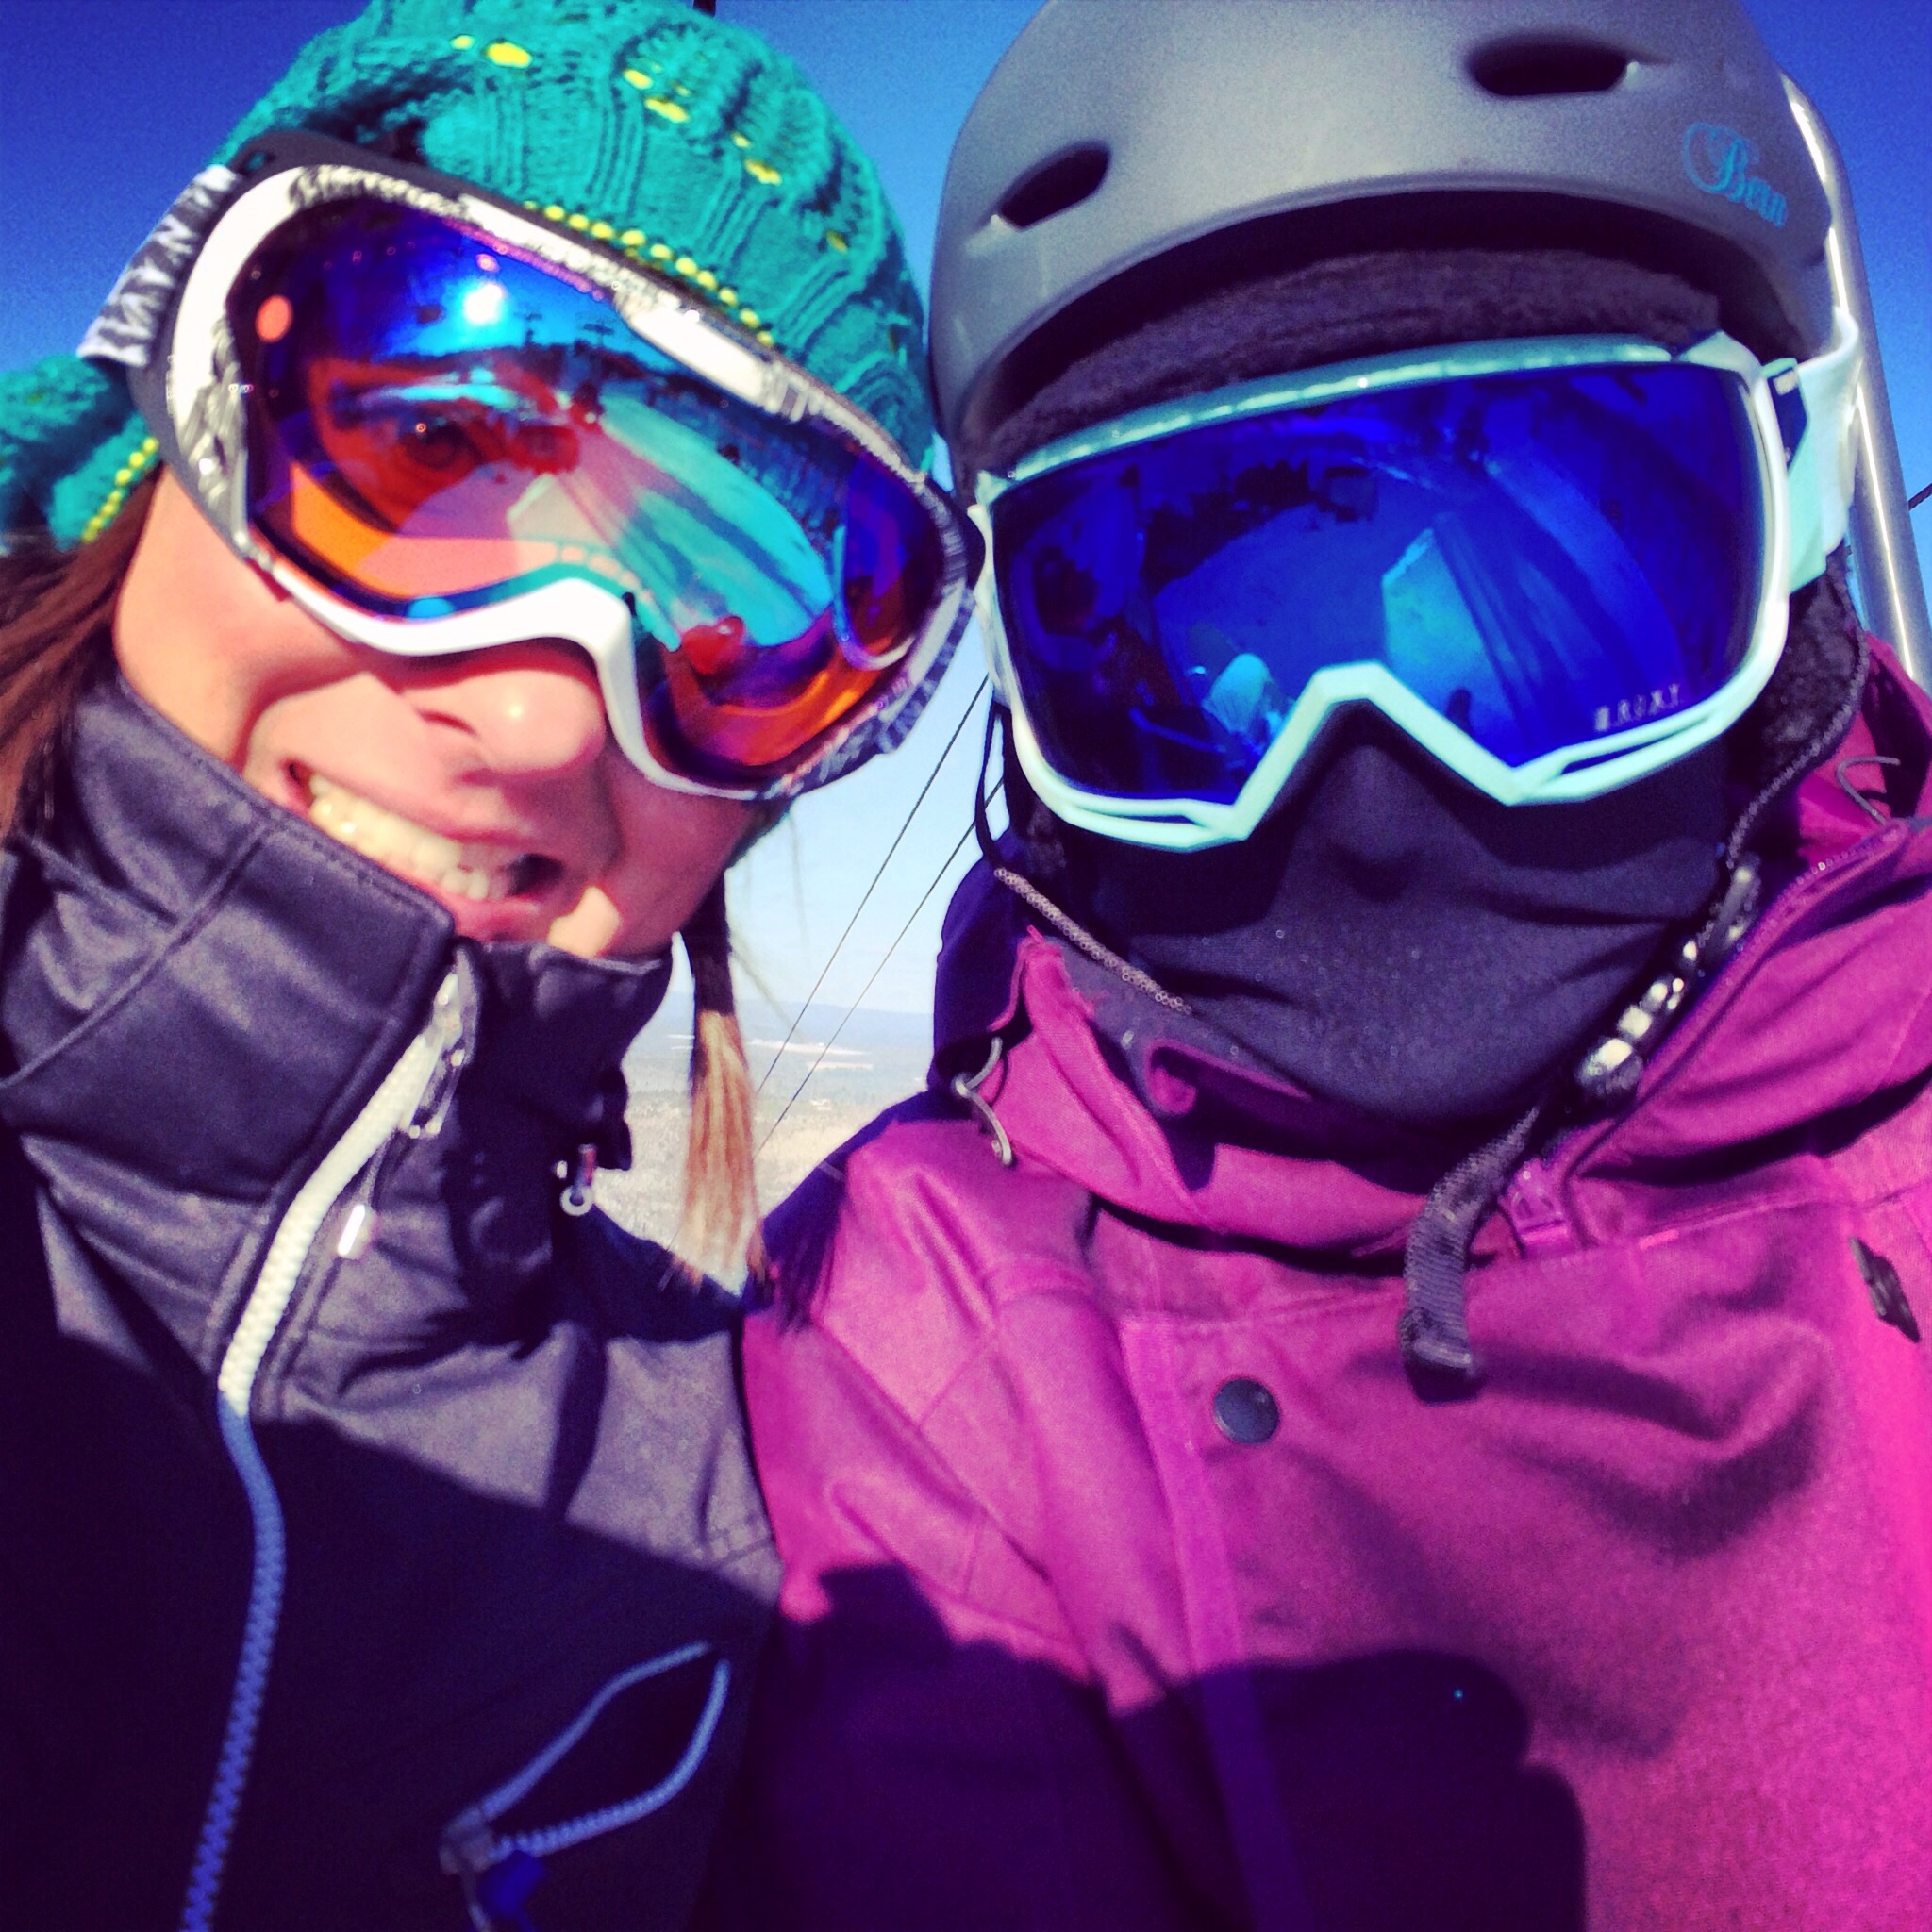 On the ski lift with a snow ninja